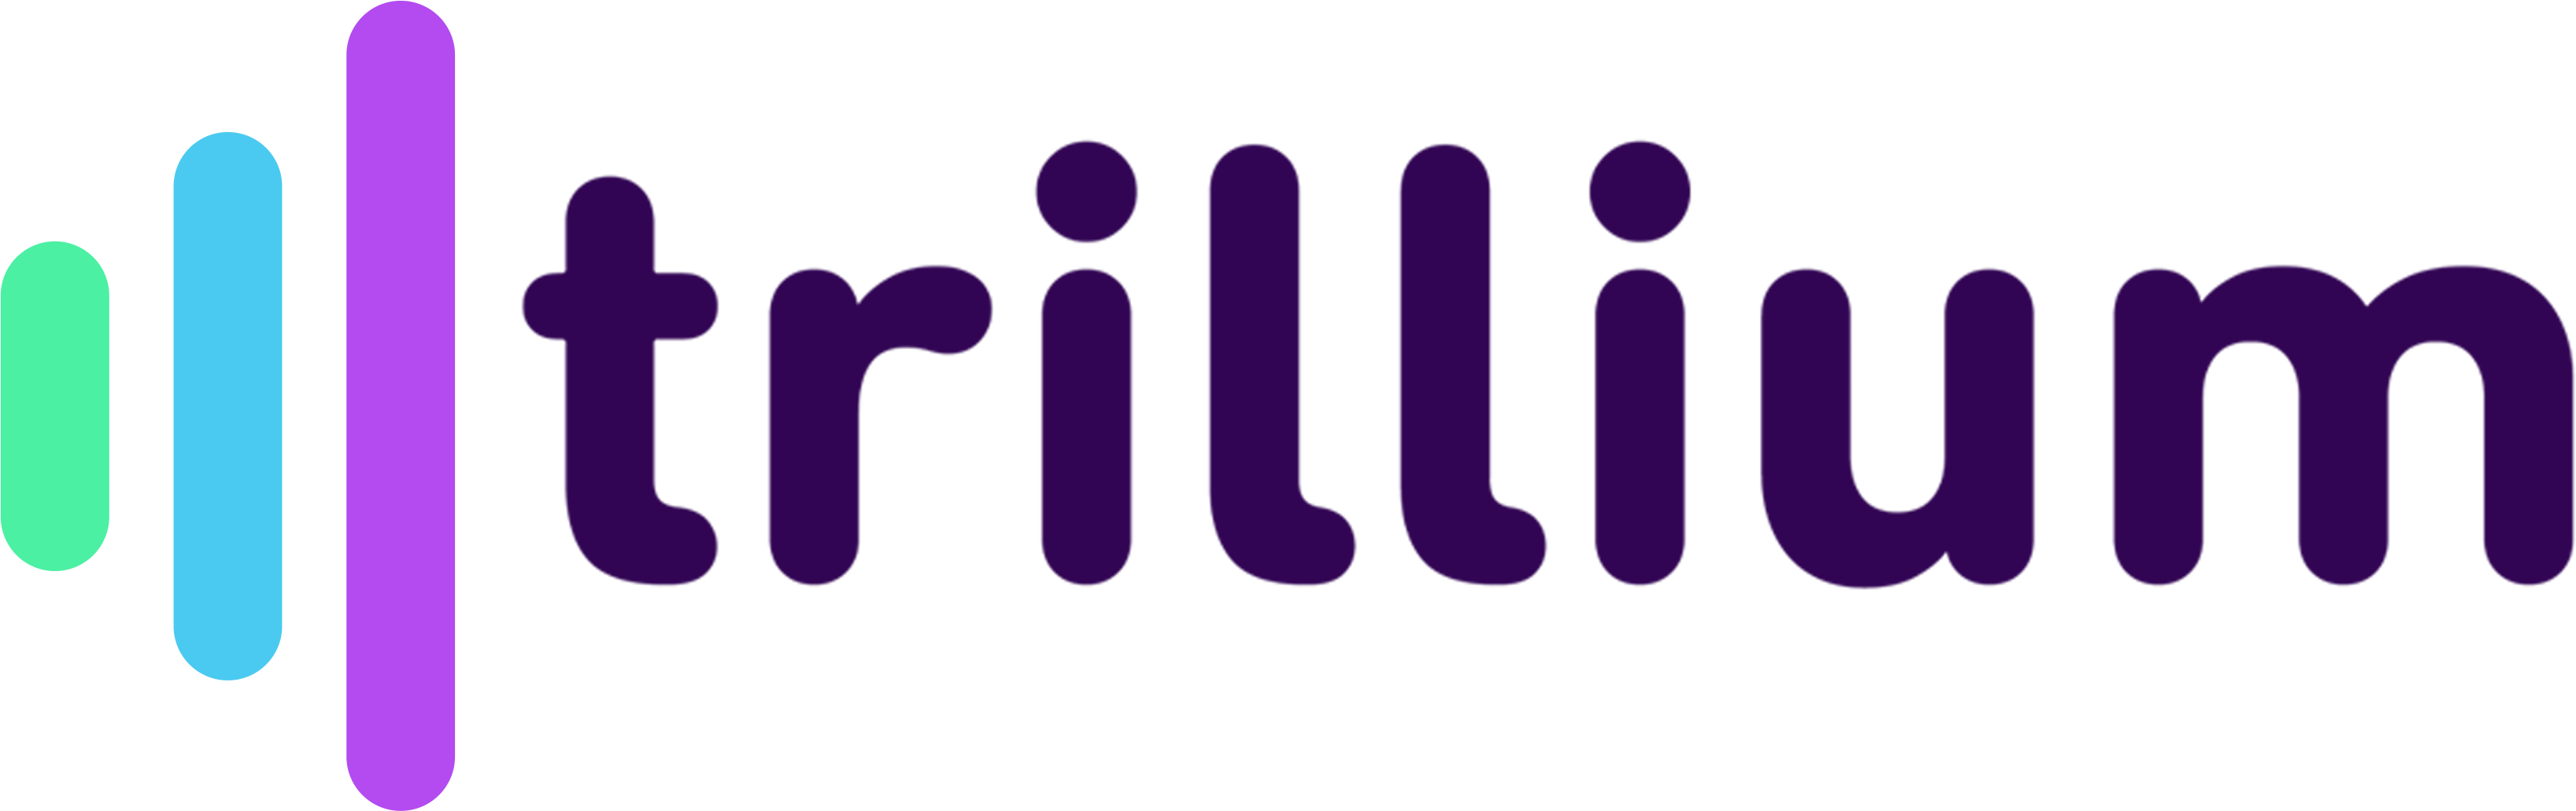 Trillium-soft